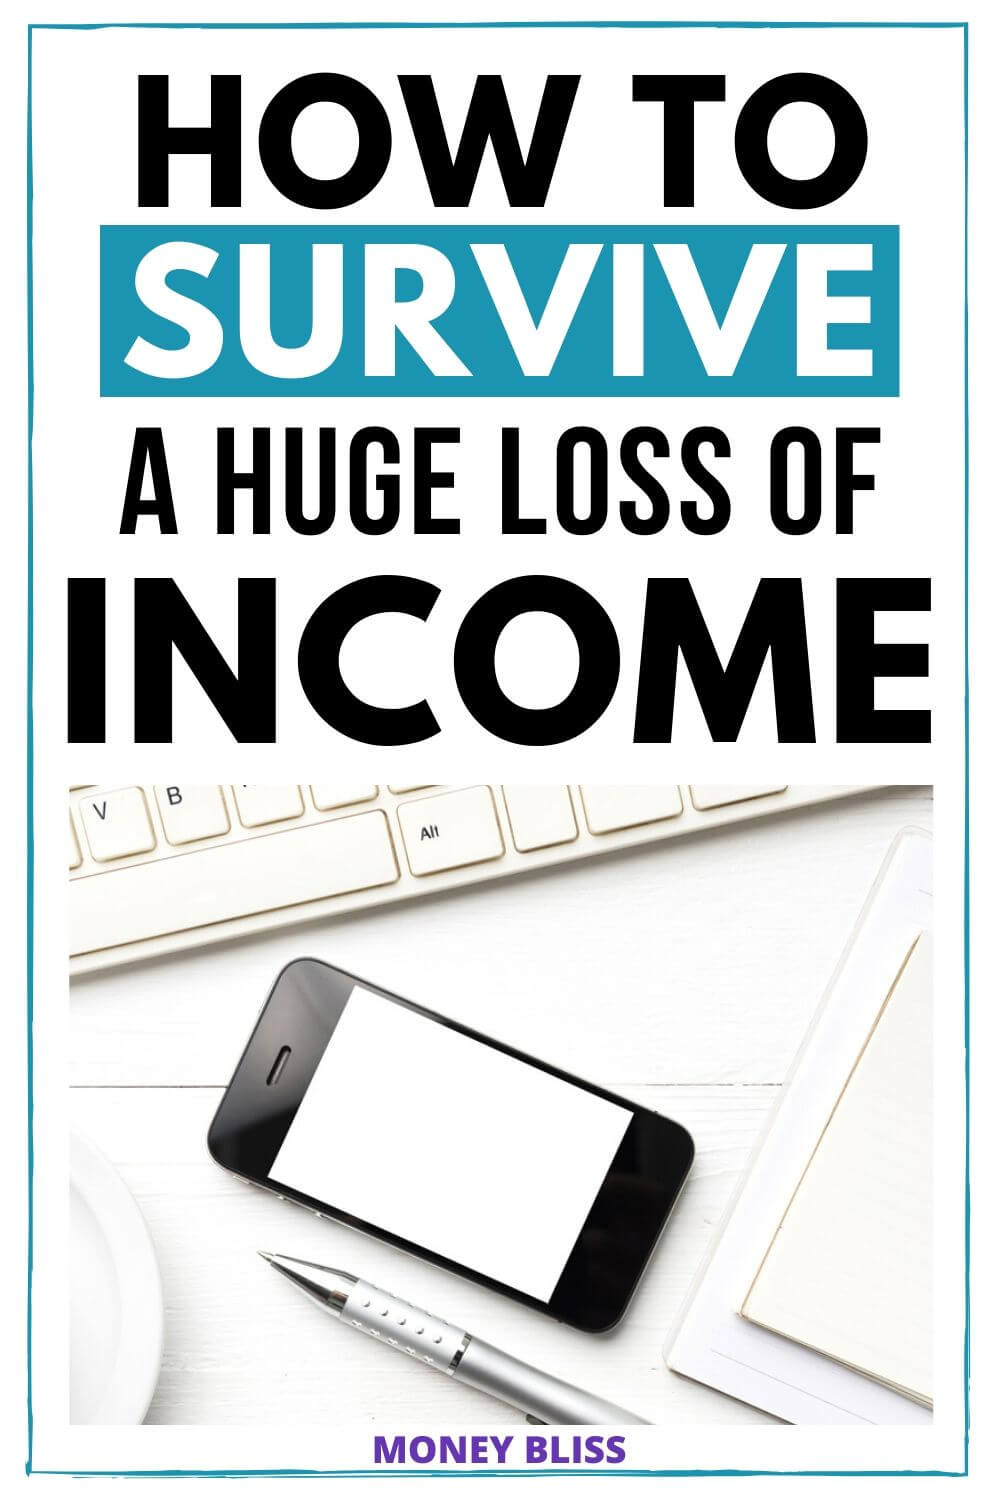 7 consejos para sobrevivir a una pérdida repentina de ingresos